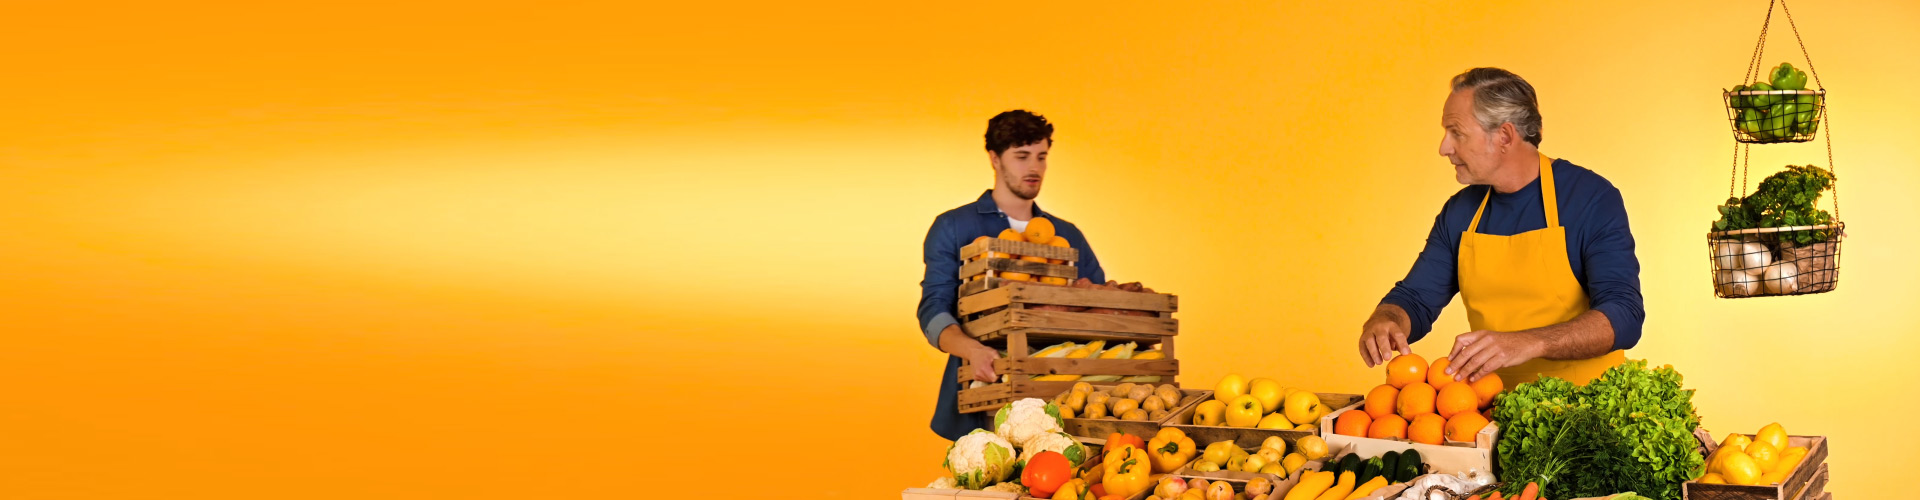 Philips HearLink şarj edilebilir işitme cihazı takan bir adam, sürdürülebilir tarım pazarında torununa portakal atarak onunla bağ kuruyor